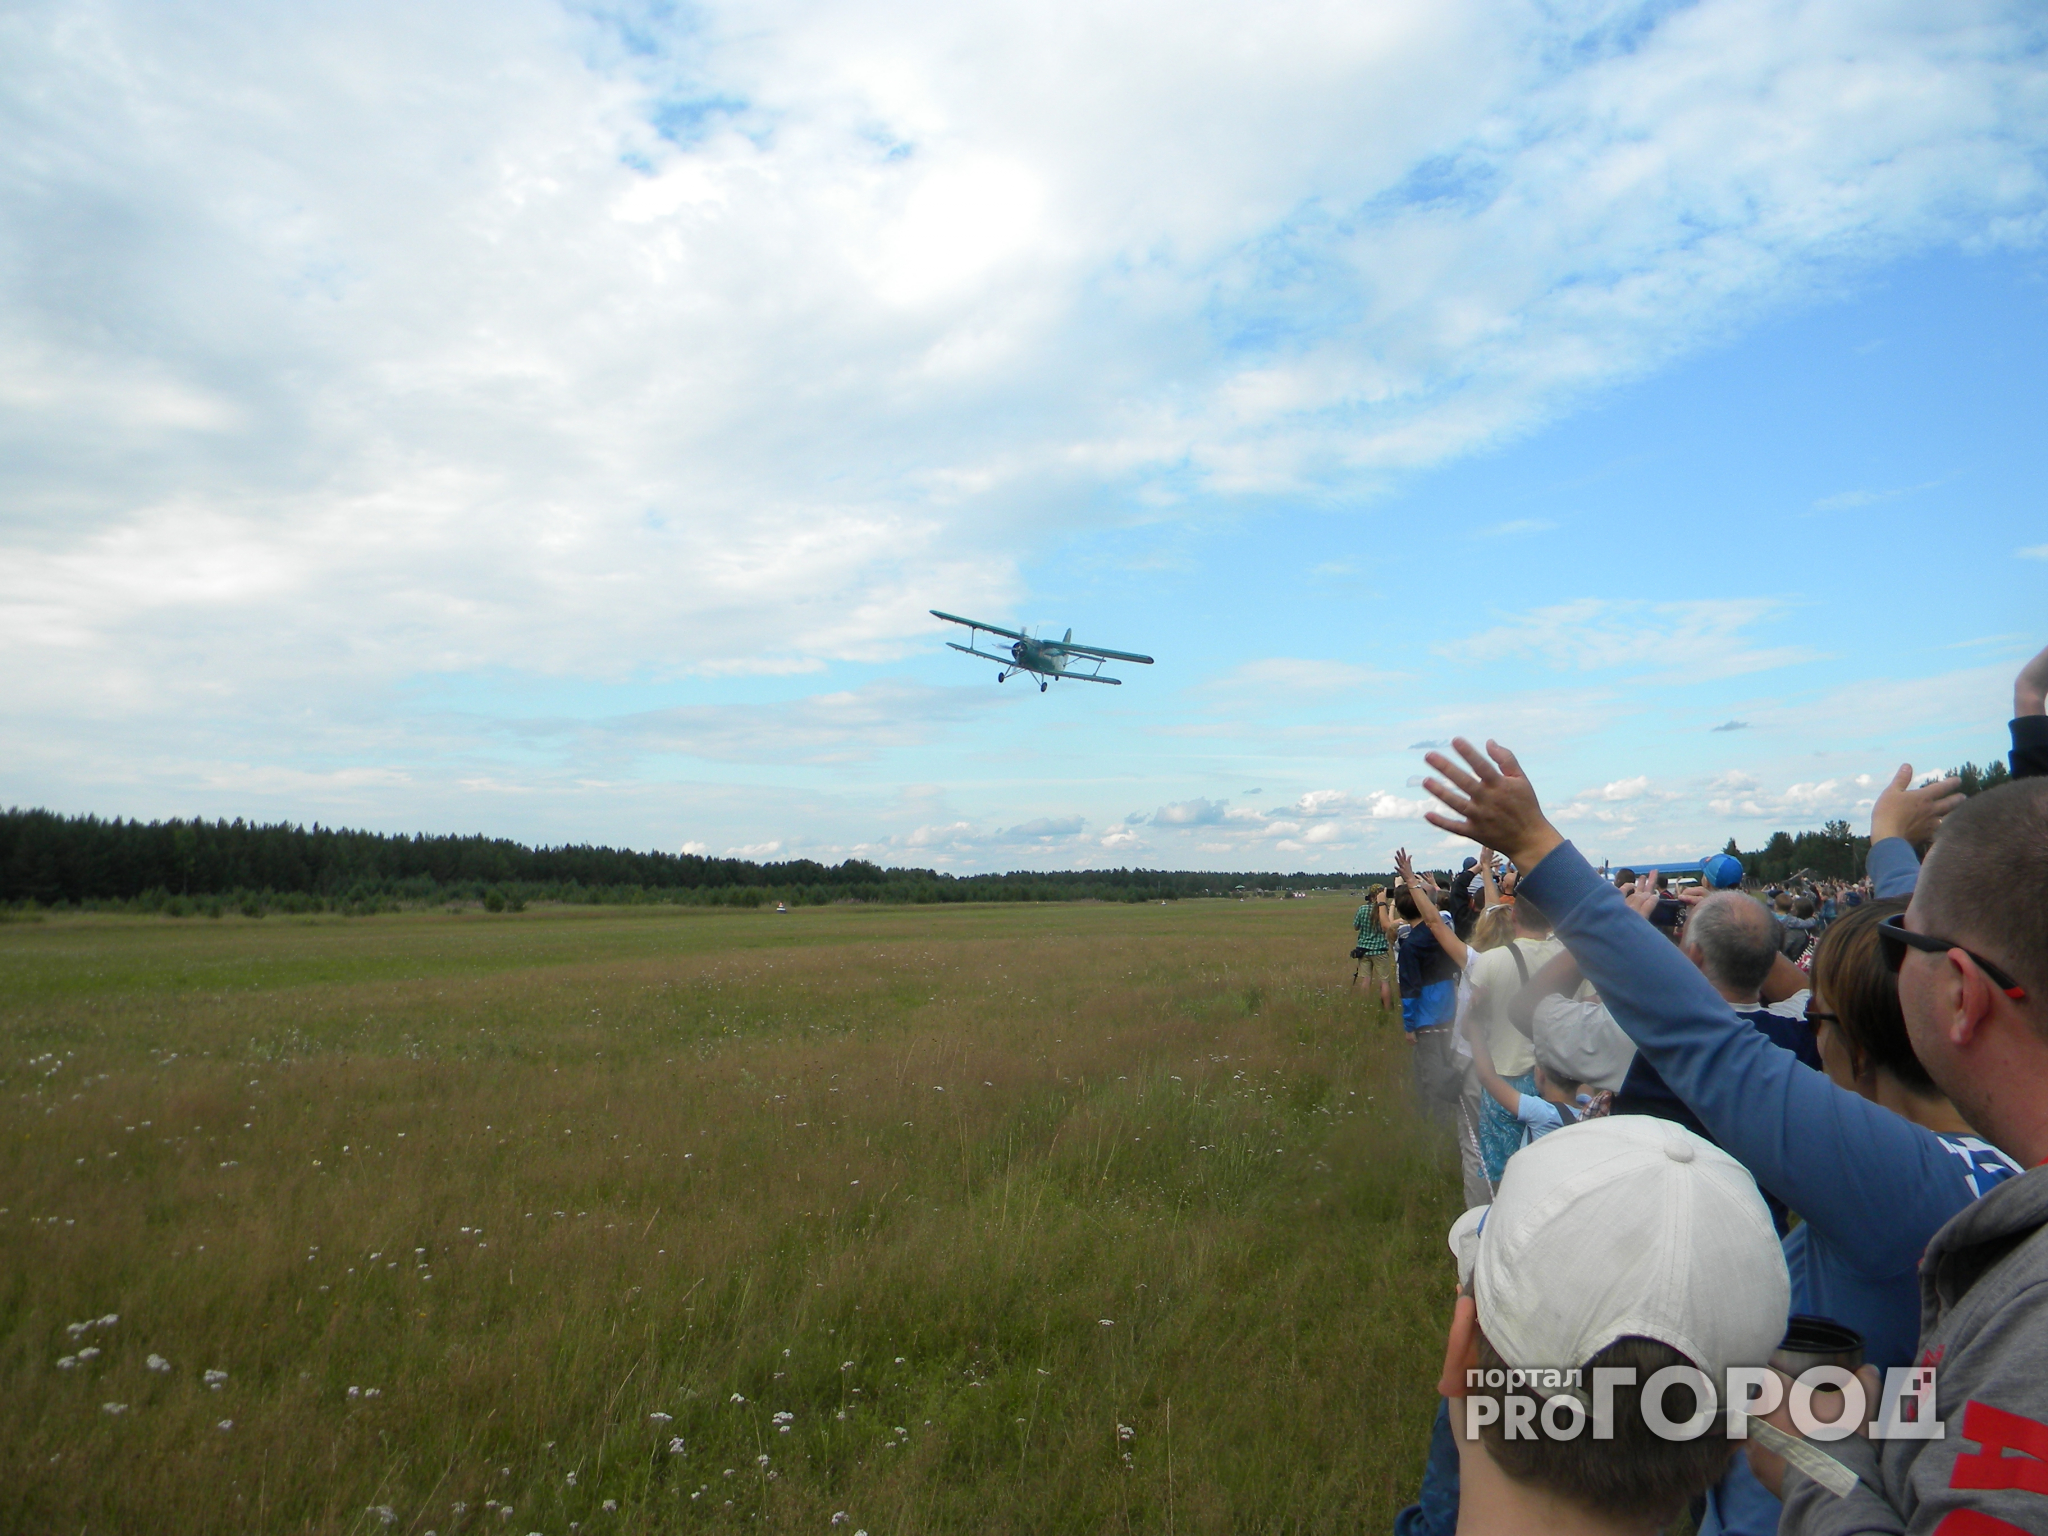 Первый слет малой авиатехники в Коми: самолеты, парапланы и воздушный шар (фото)